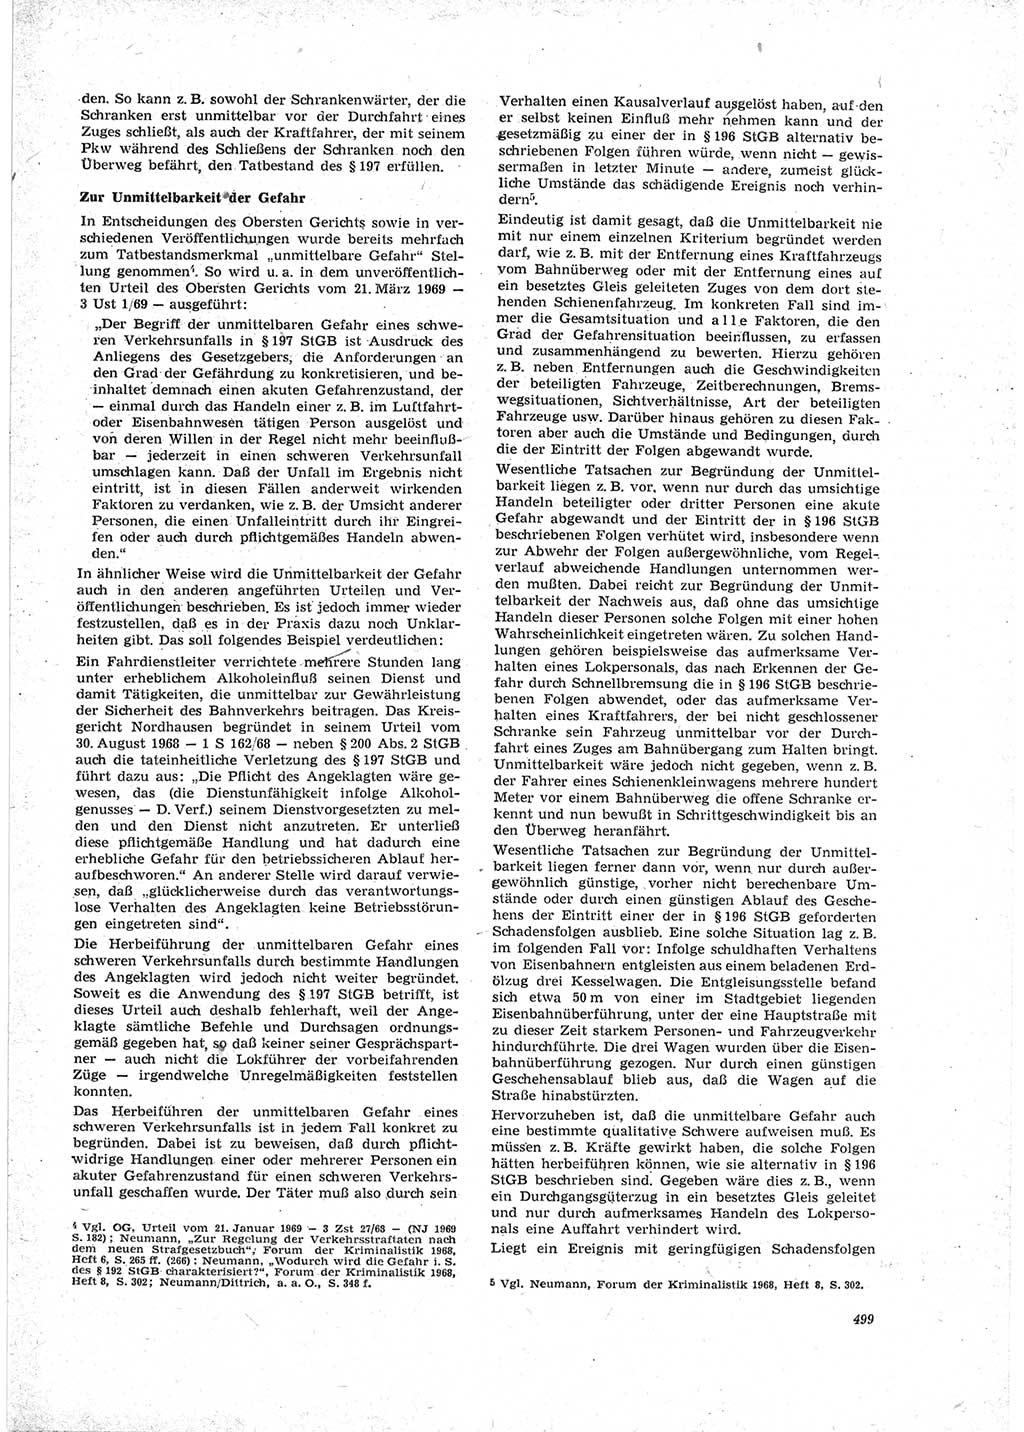 Neue Justiz (NJ), Zeitschrift für Recht und Rechtswissenschaft [Deutsche Demokratische Republik (DDR)], 23. Jahrgang 1969, Seite 499 (NJ DDR 1969, S. 499)